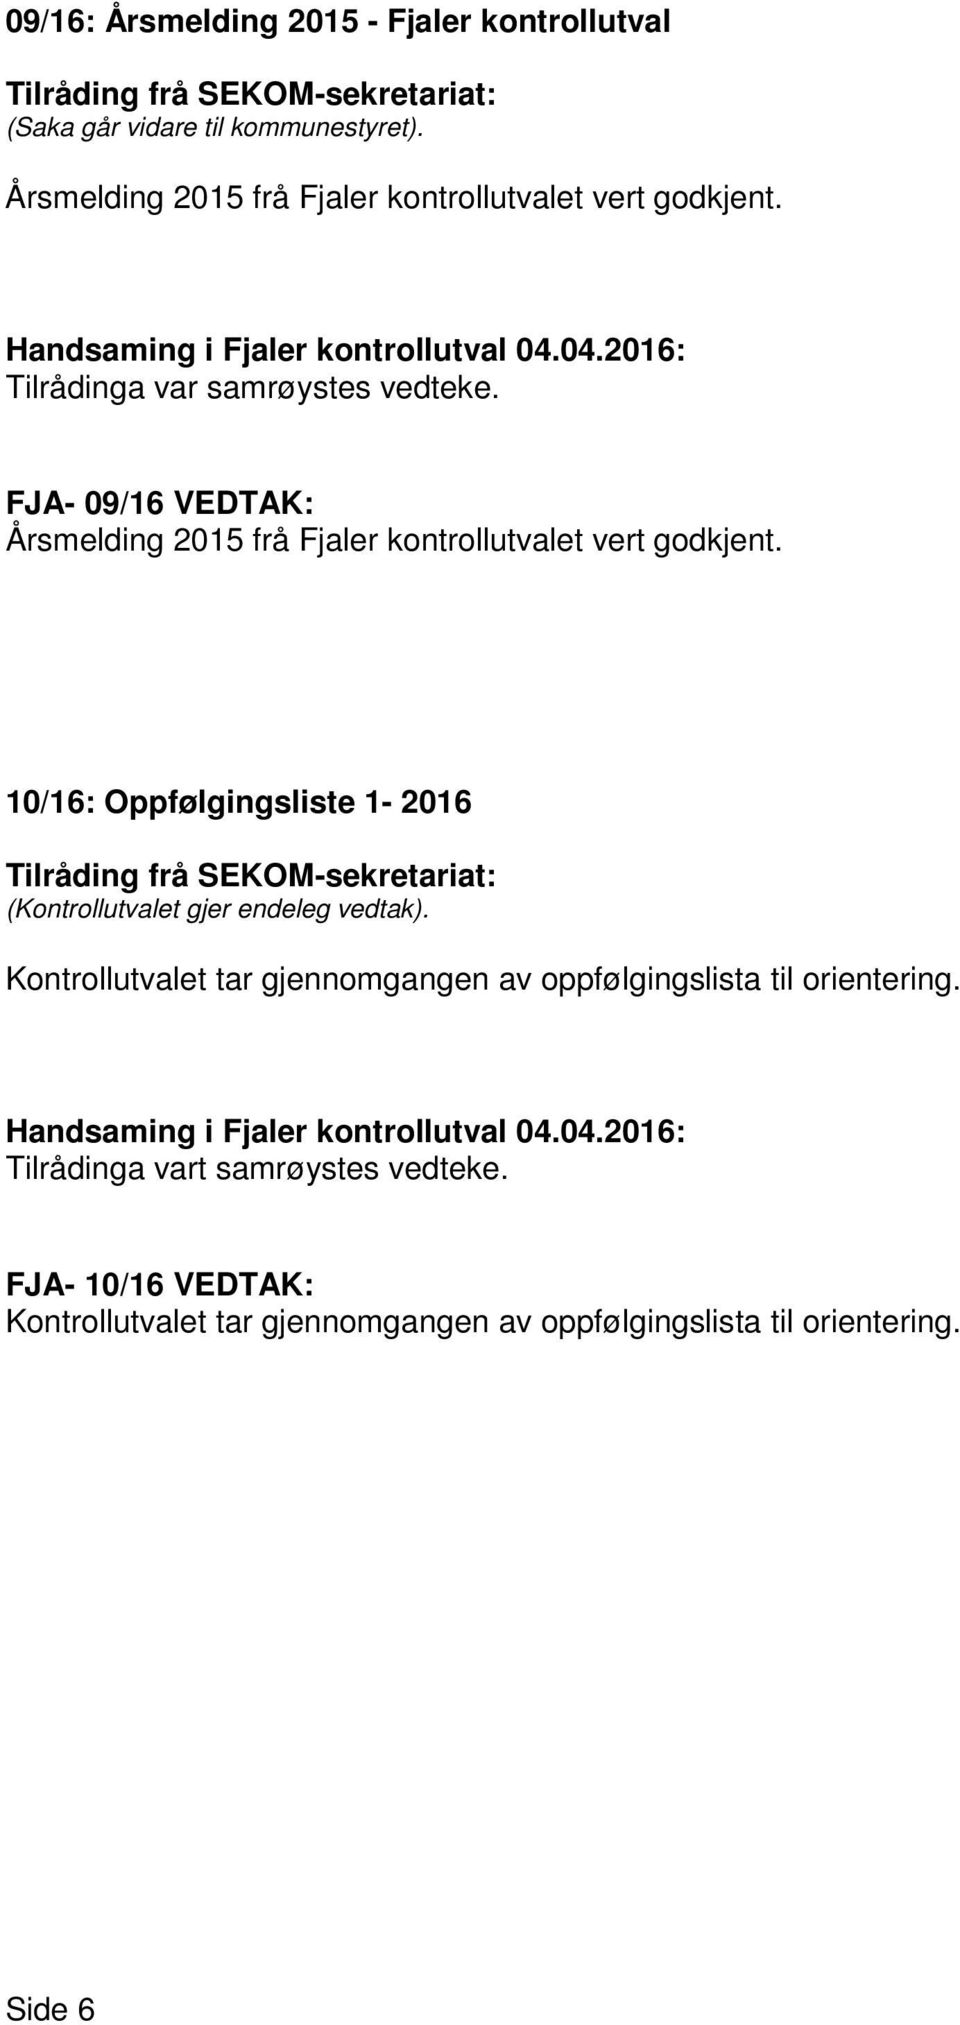 FJA- 09/16 VEDTAK: Årsmelding 2015 frå Fjaler kontrollutvalet vert godkjent.